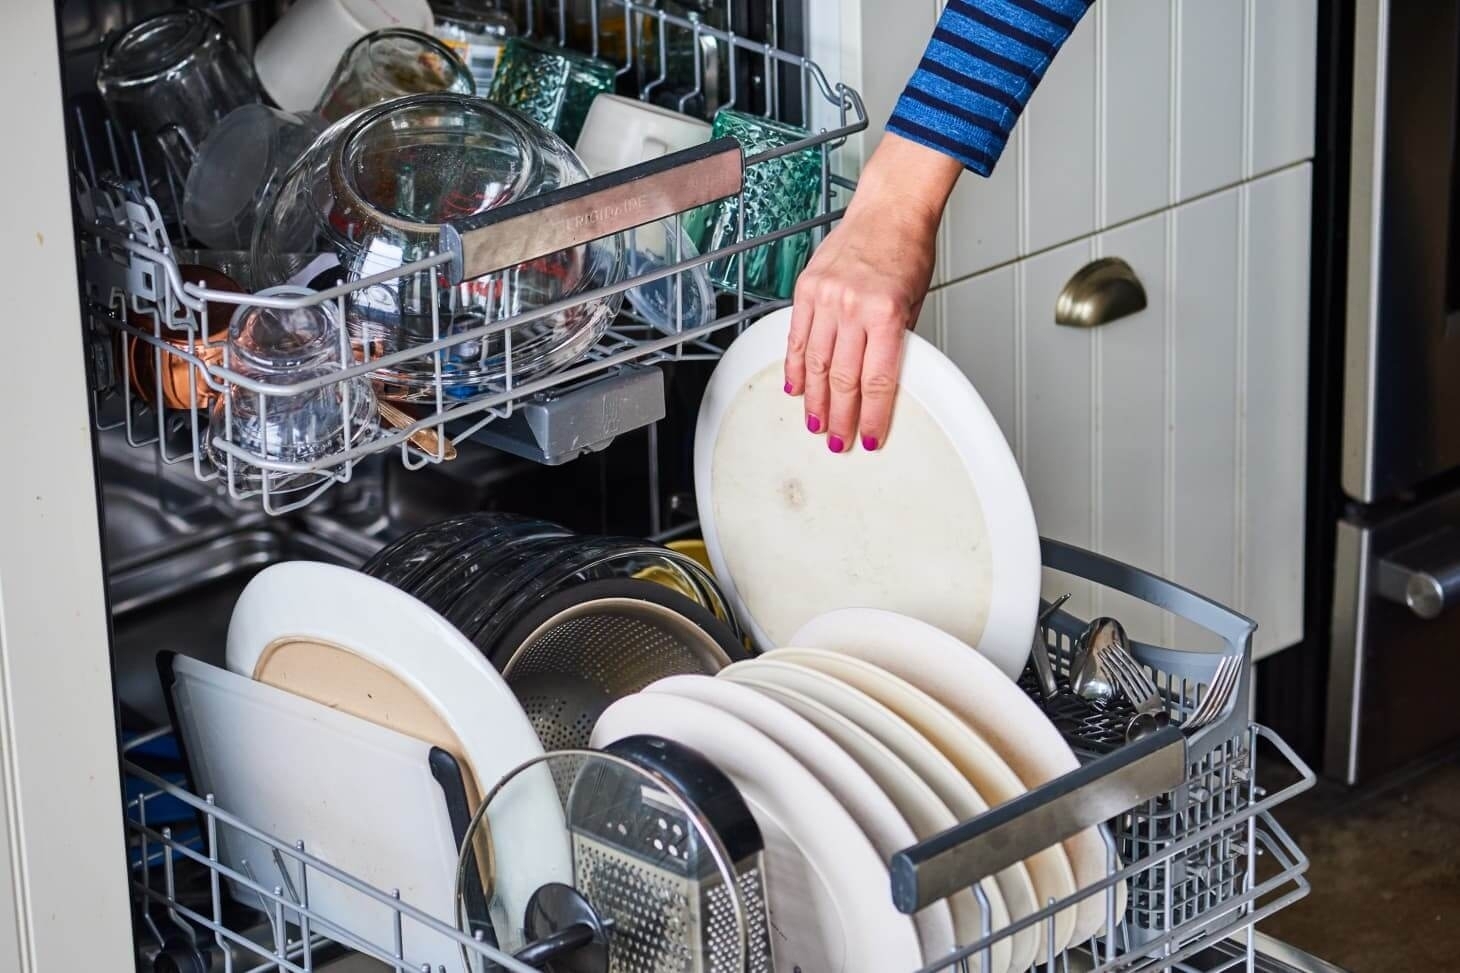 Плохо ли часто запускать посудомоечную машину? Мы спросили об этом экспертов